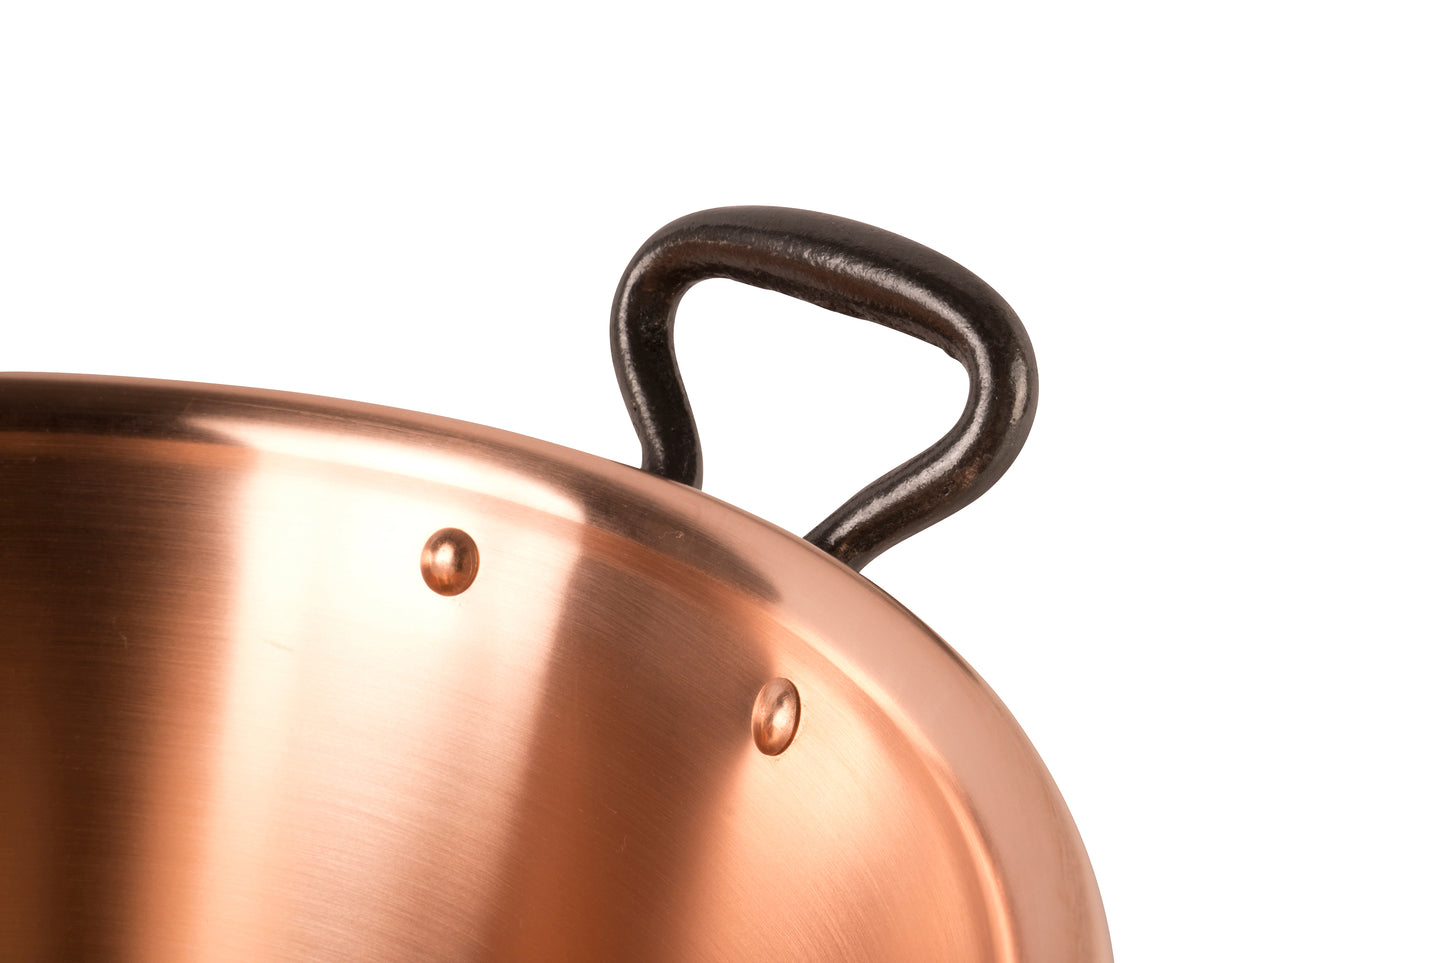 Copper jam pot with cast iron handles, 3.1 qt